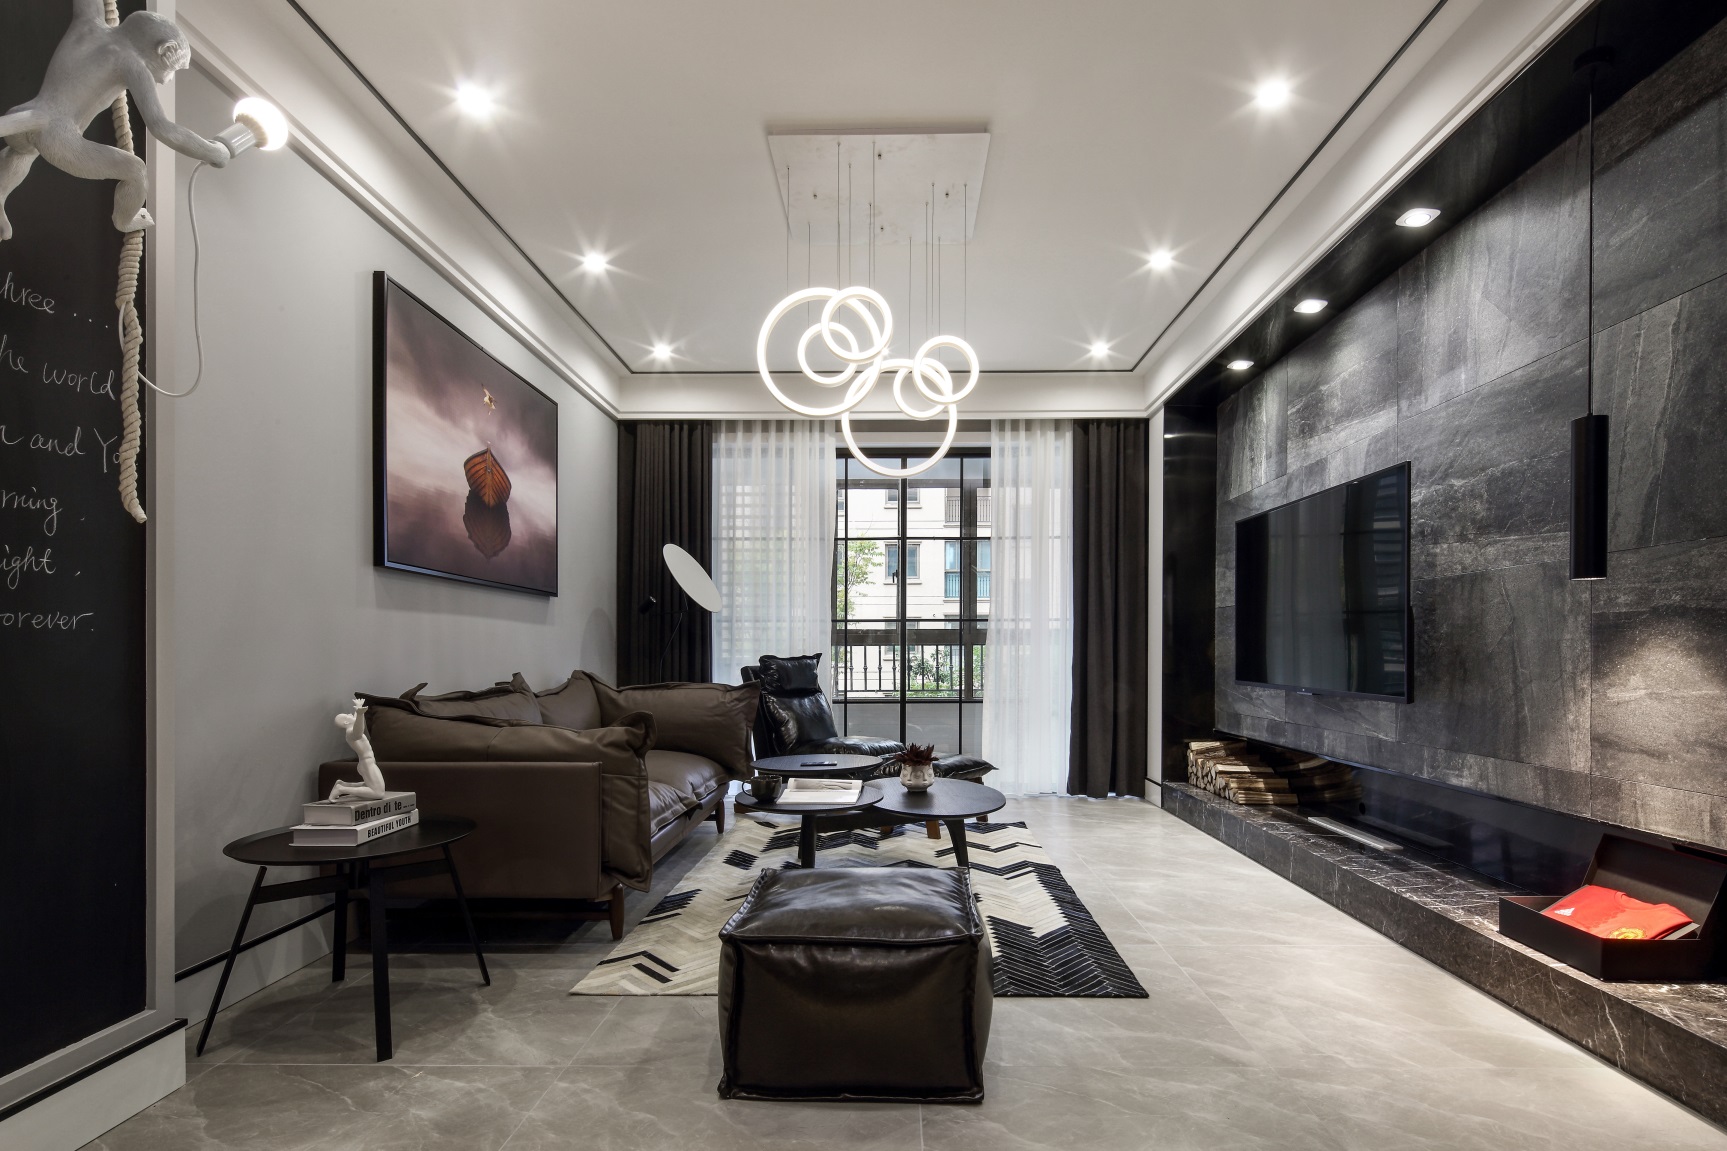 客厅空间引用灰色为基调，并大胆运用灯光与之相对应，达到视觉上的平衡。